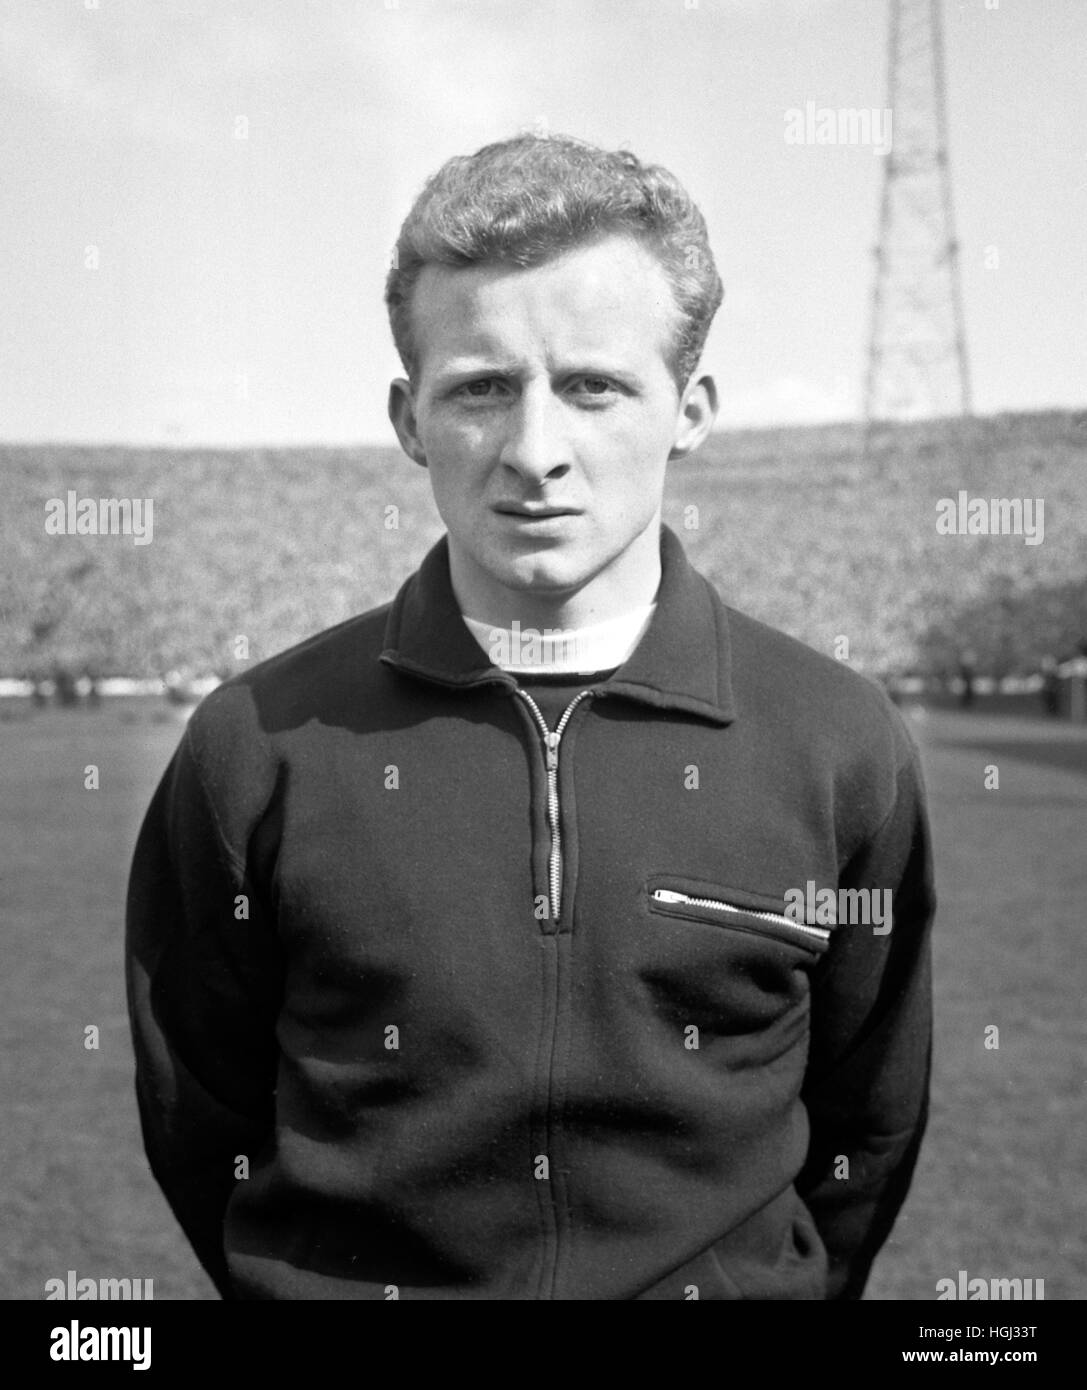 Jimmy Johnstone, il Glasgow Celtic e scozzese winger internazionale. Johnstone è stato firmato da Blantyre Celtic nel 1961. Foto Stock